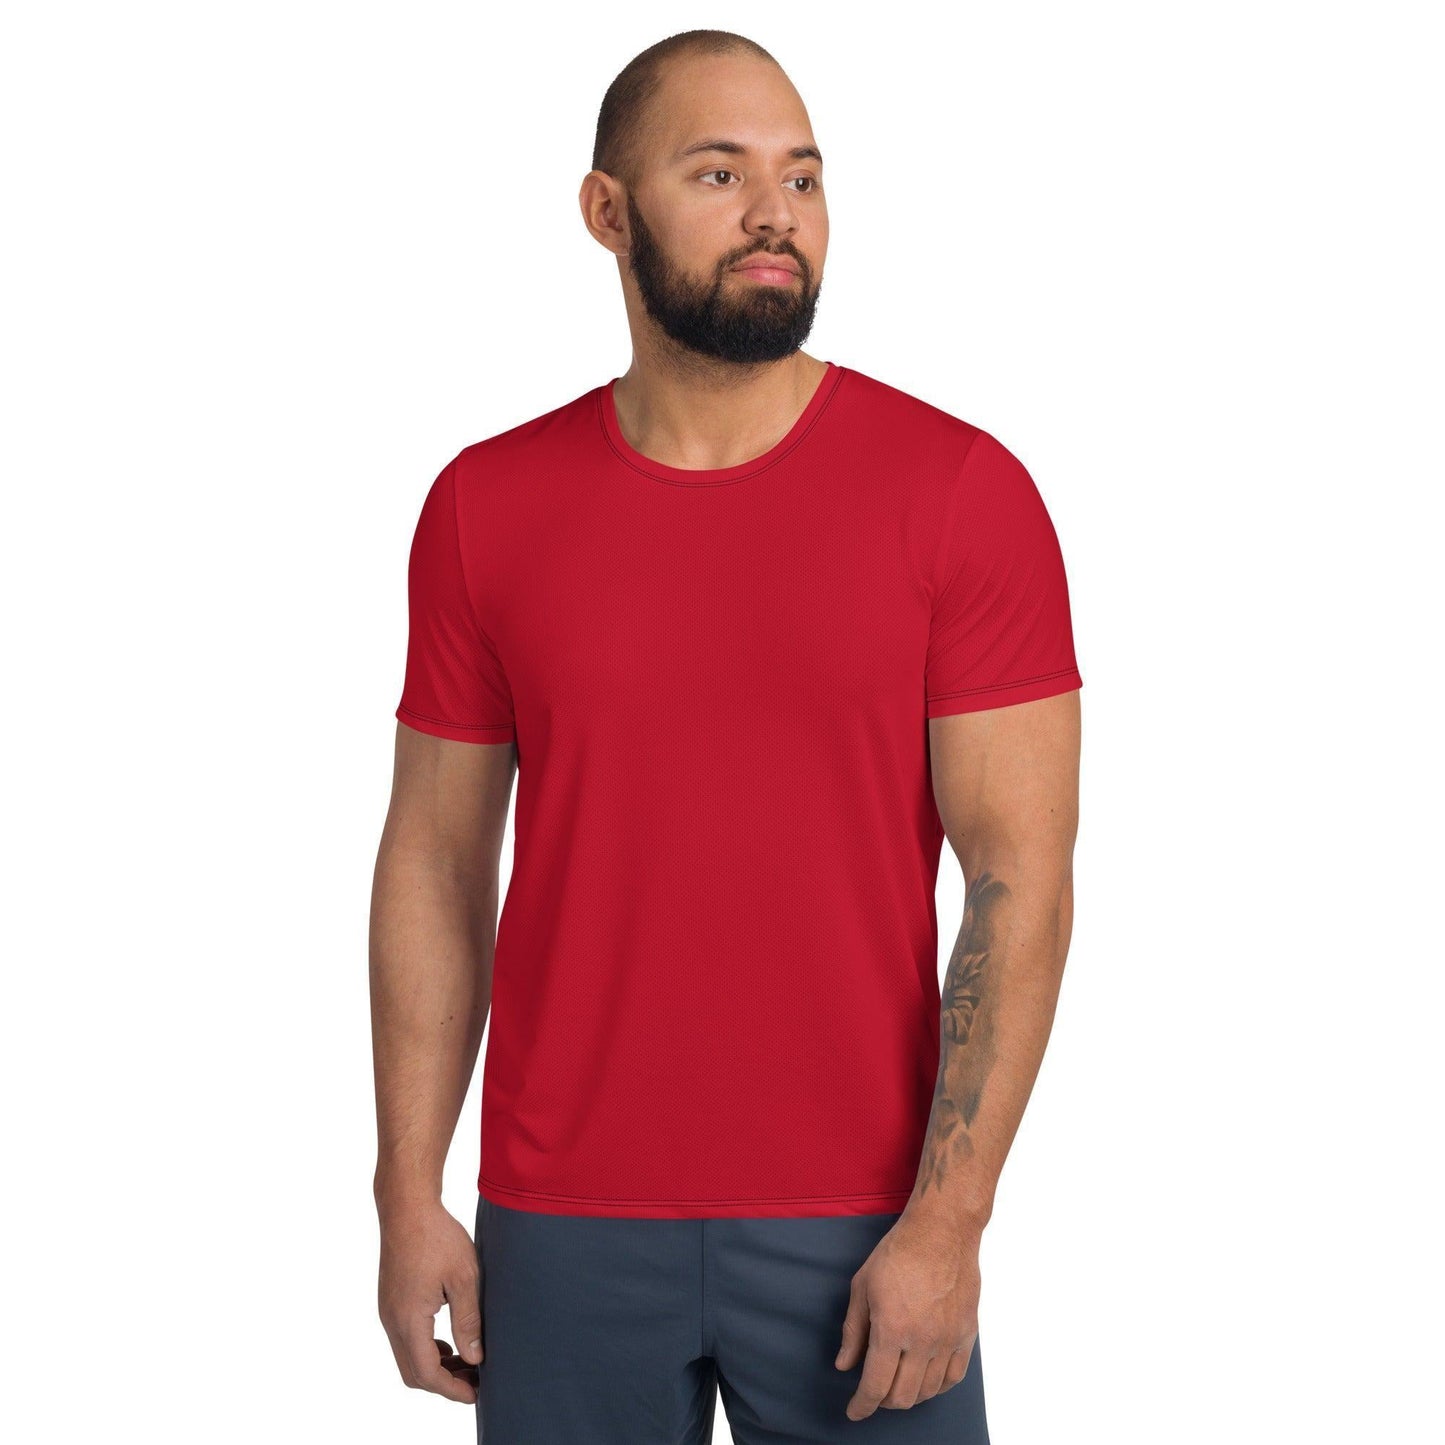 Rotes Sport T-Shirt für Herren -- Rotes Sport T-Shirt für Herren - undefined Sport T-Shirt | JLR Design